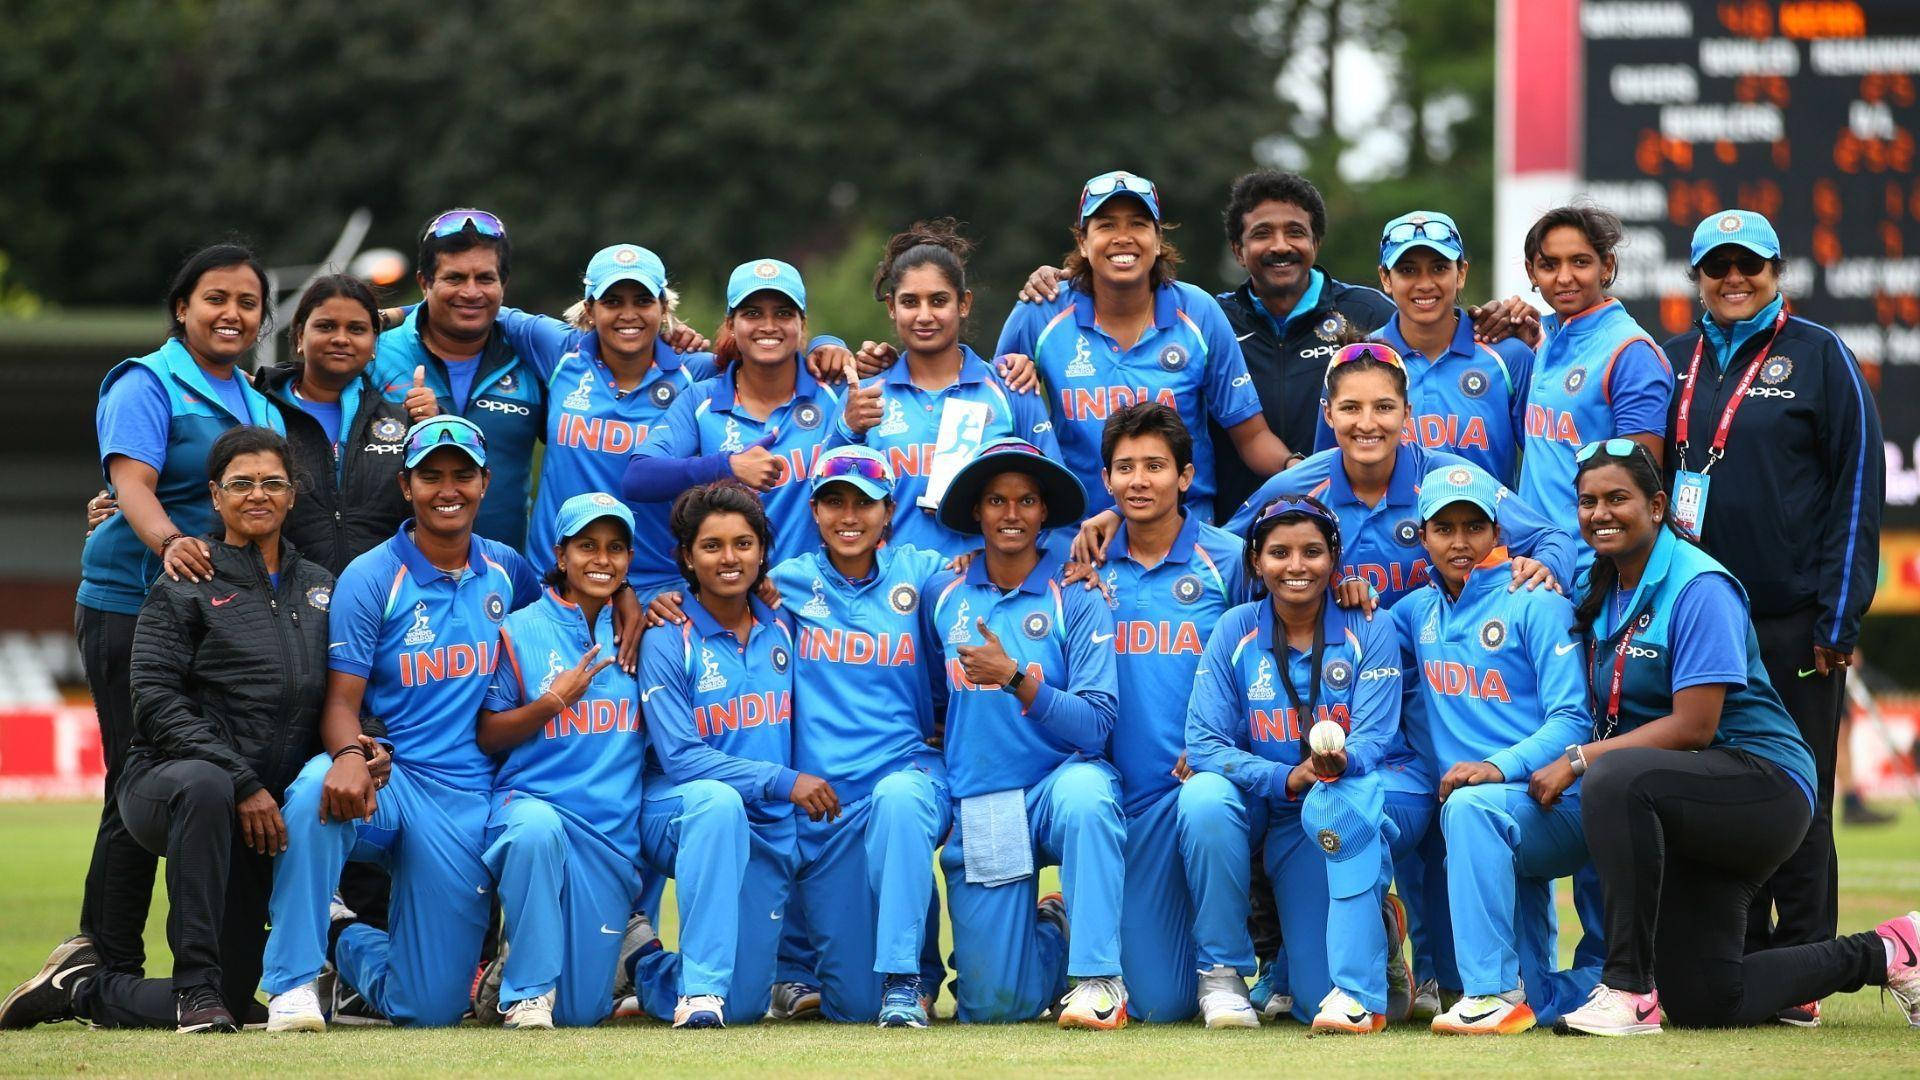 Indian Cricket Team Women's League Wallpaper